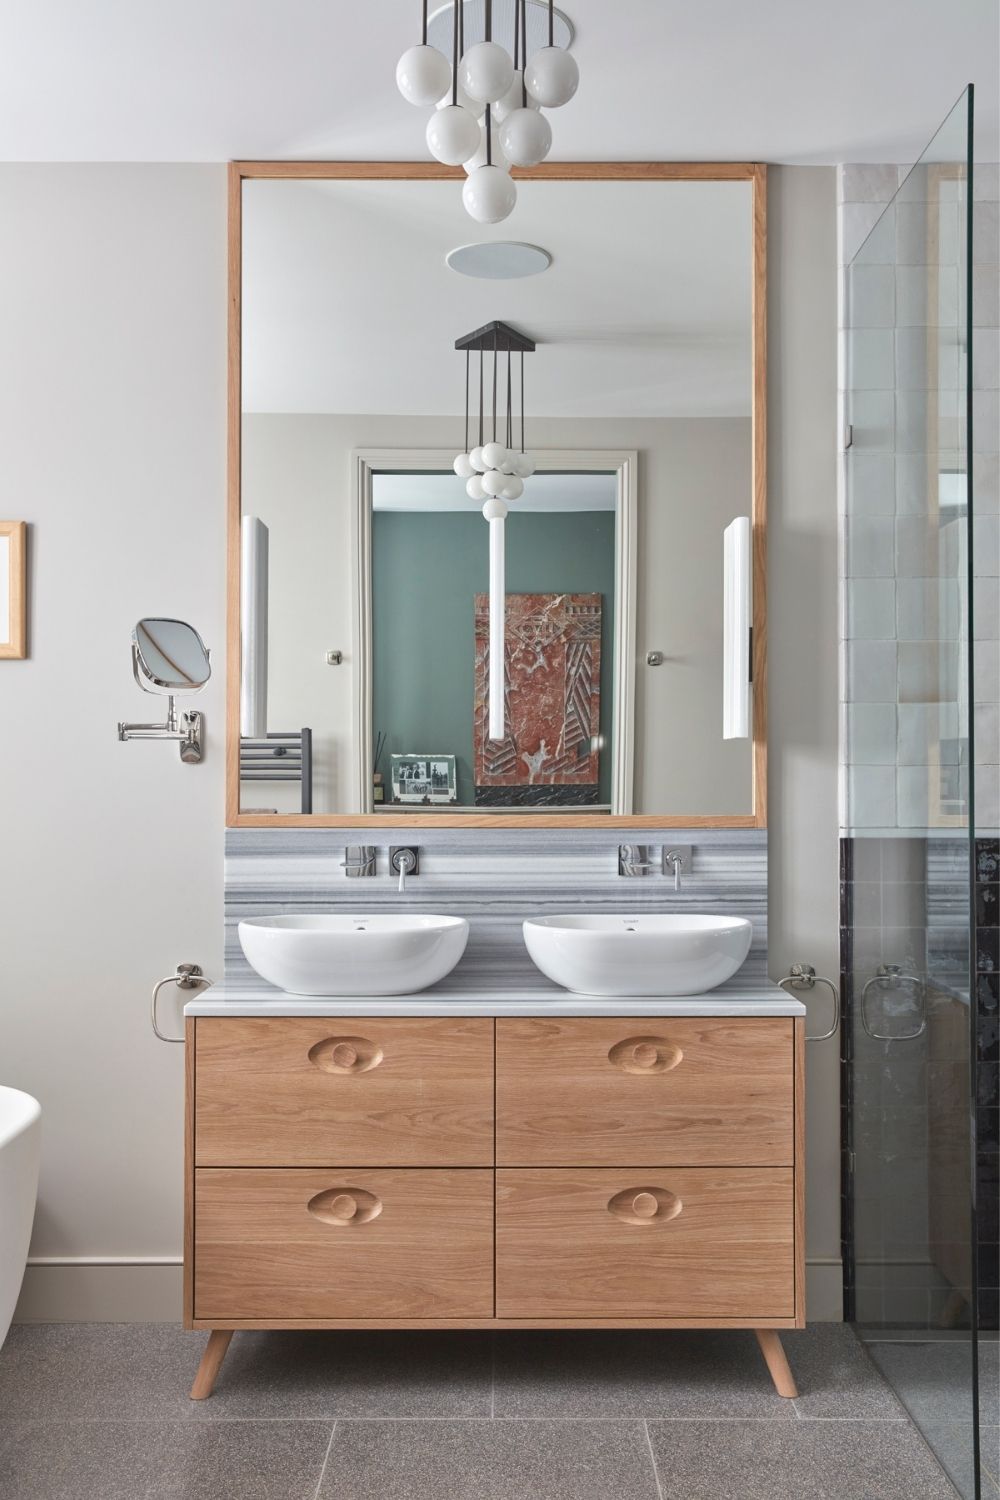 evoke projects ltd islington bespoke bathroom sink cabinet